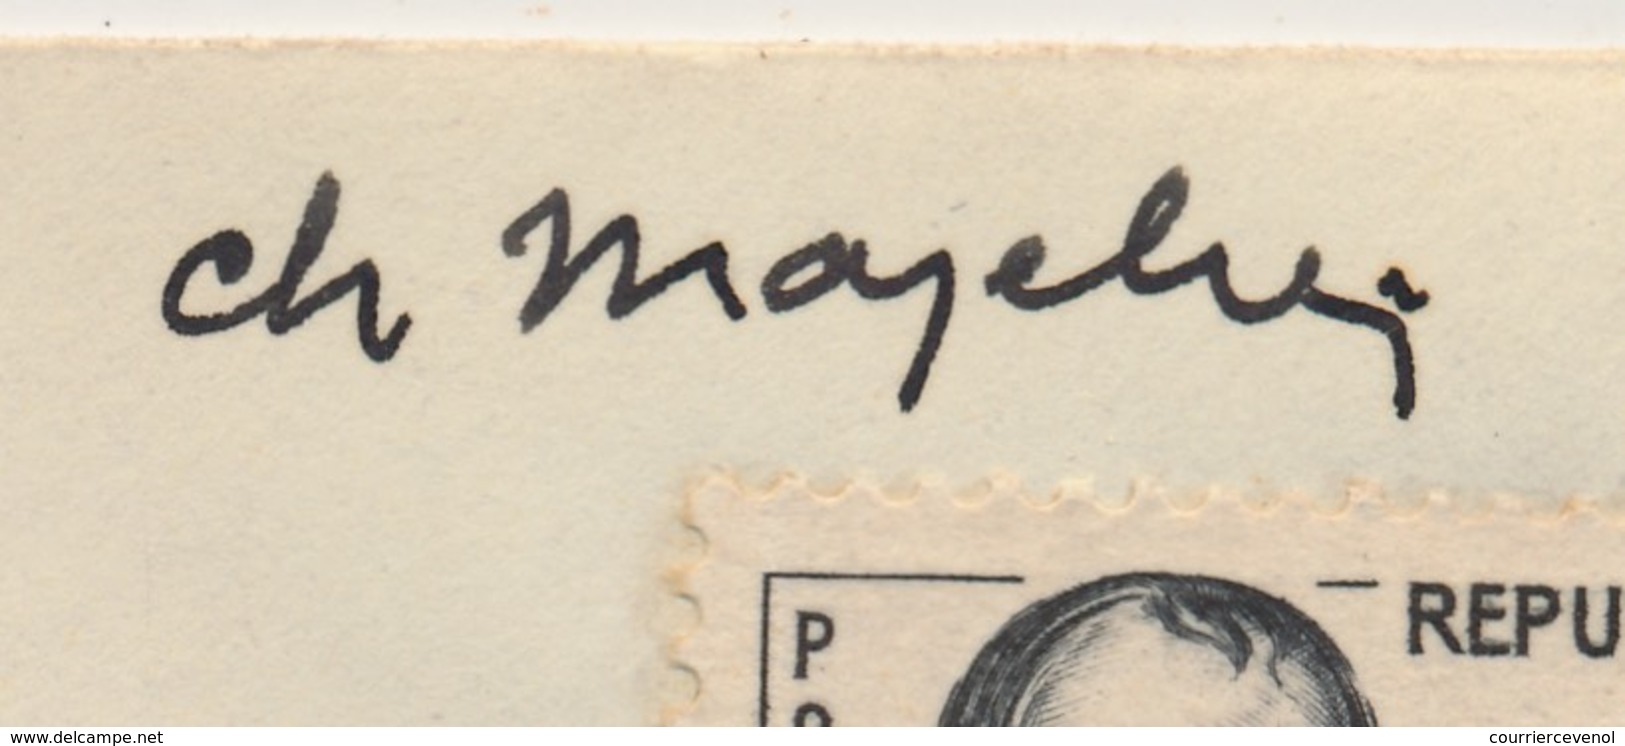 Enveloppe Scotem - 0,30 + 0,10 Général DROUOT Obl. Cachet Illustré Congrès NANCY 1961 Signature MAZELIN - Lettres & Documents